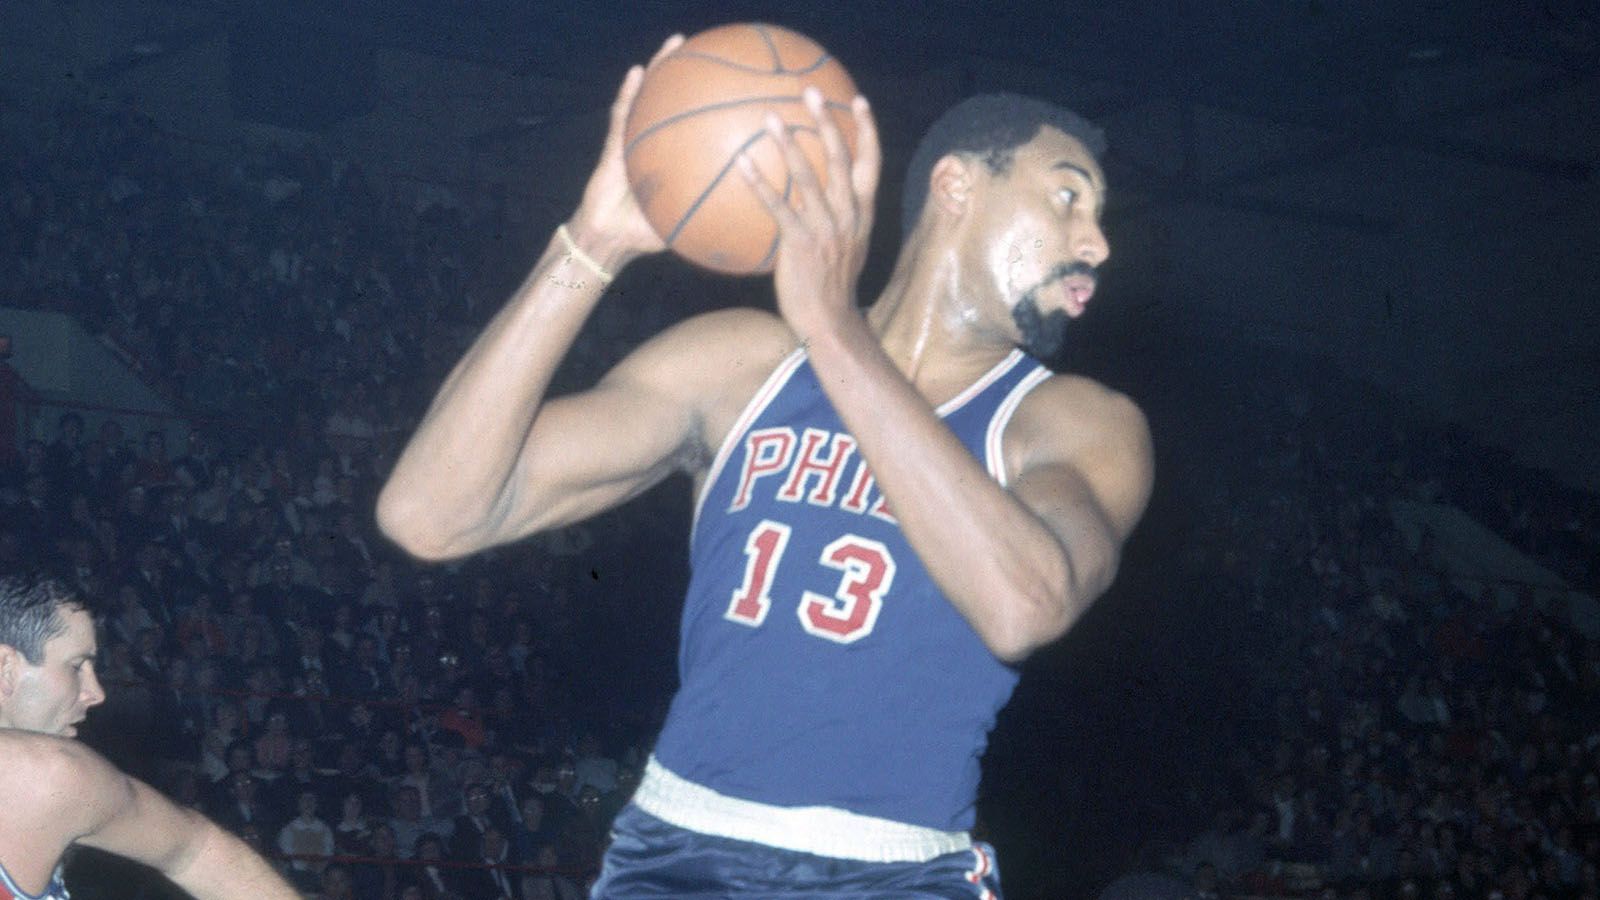 <strong>Platz 9 (geteilt): Philadelphia Warriors - New York Knicks</strong><br>Endergebnis: 169:147<br>Gesamtpunkte: 316<br>Top-Scorer: Wilt Chamberlain (Warriors), 100 Punkte<br>Datum: 2. März 1962